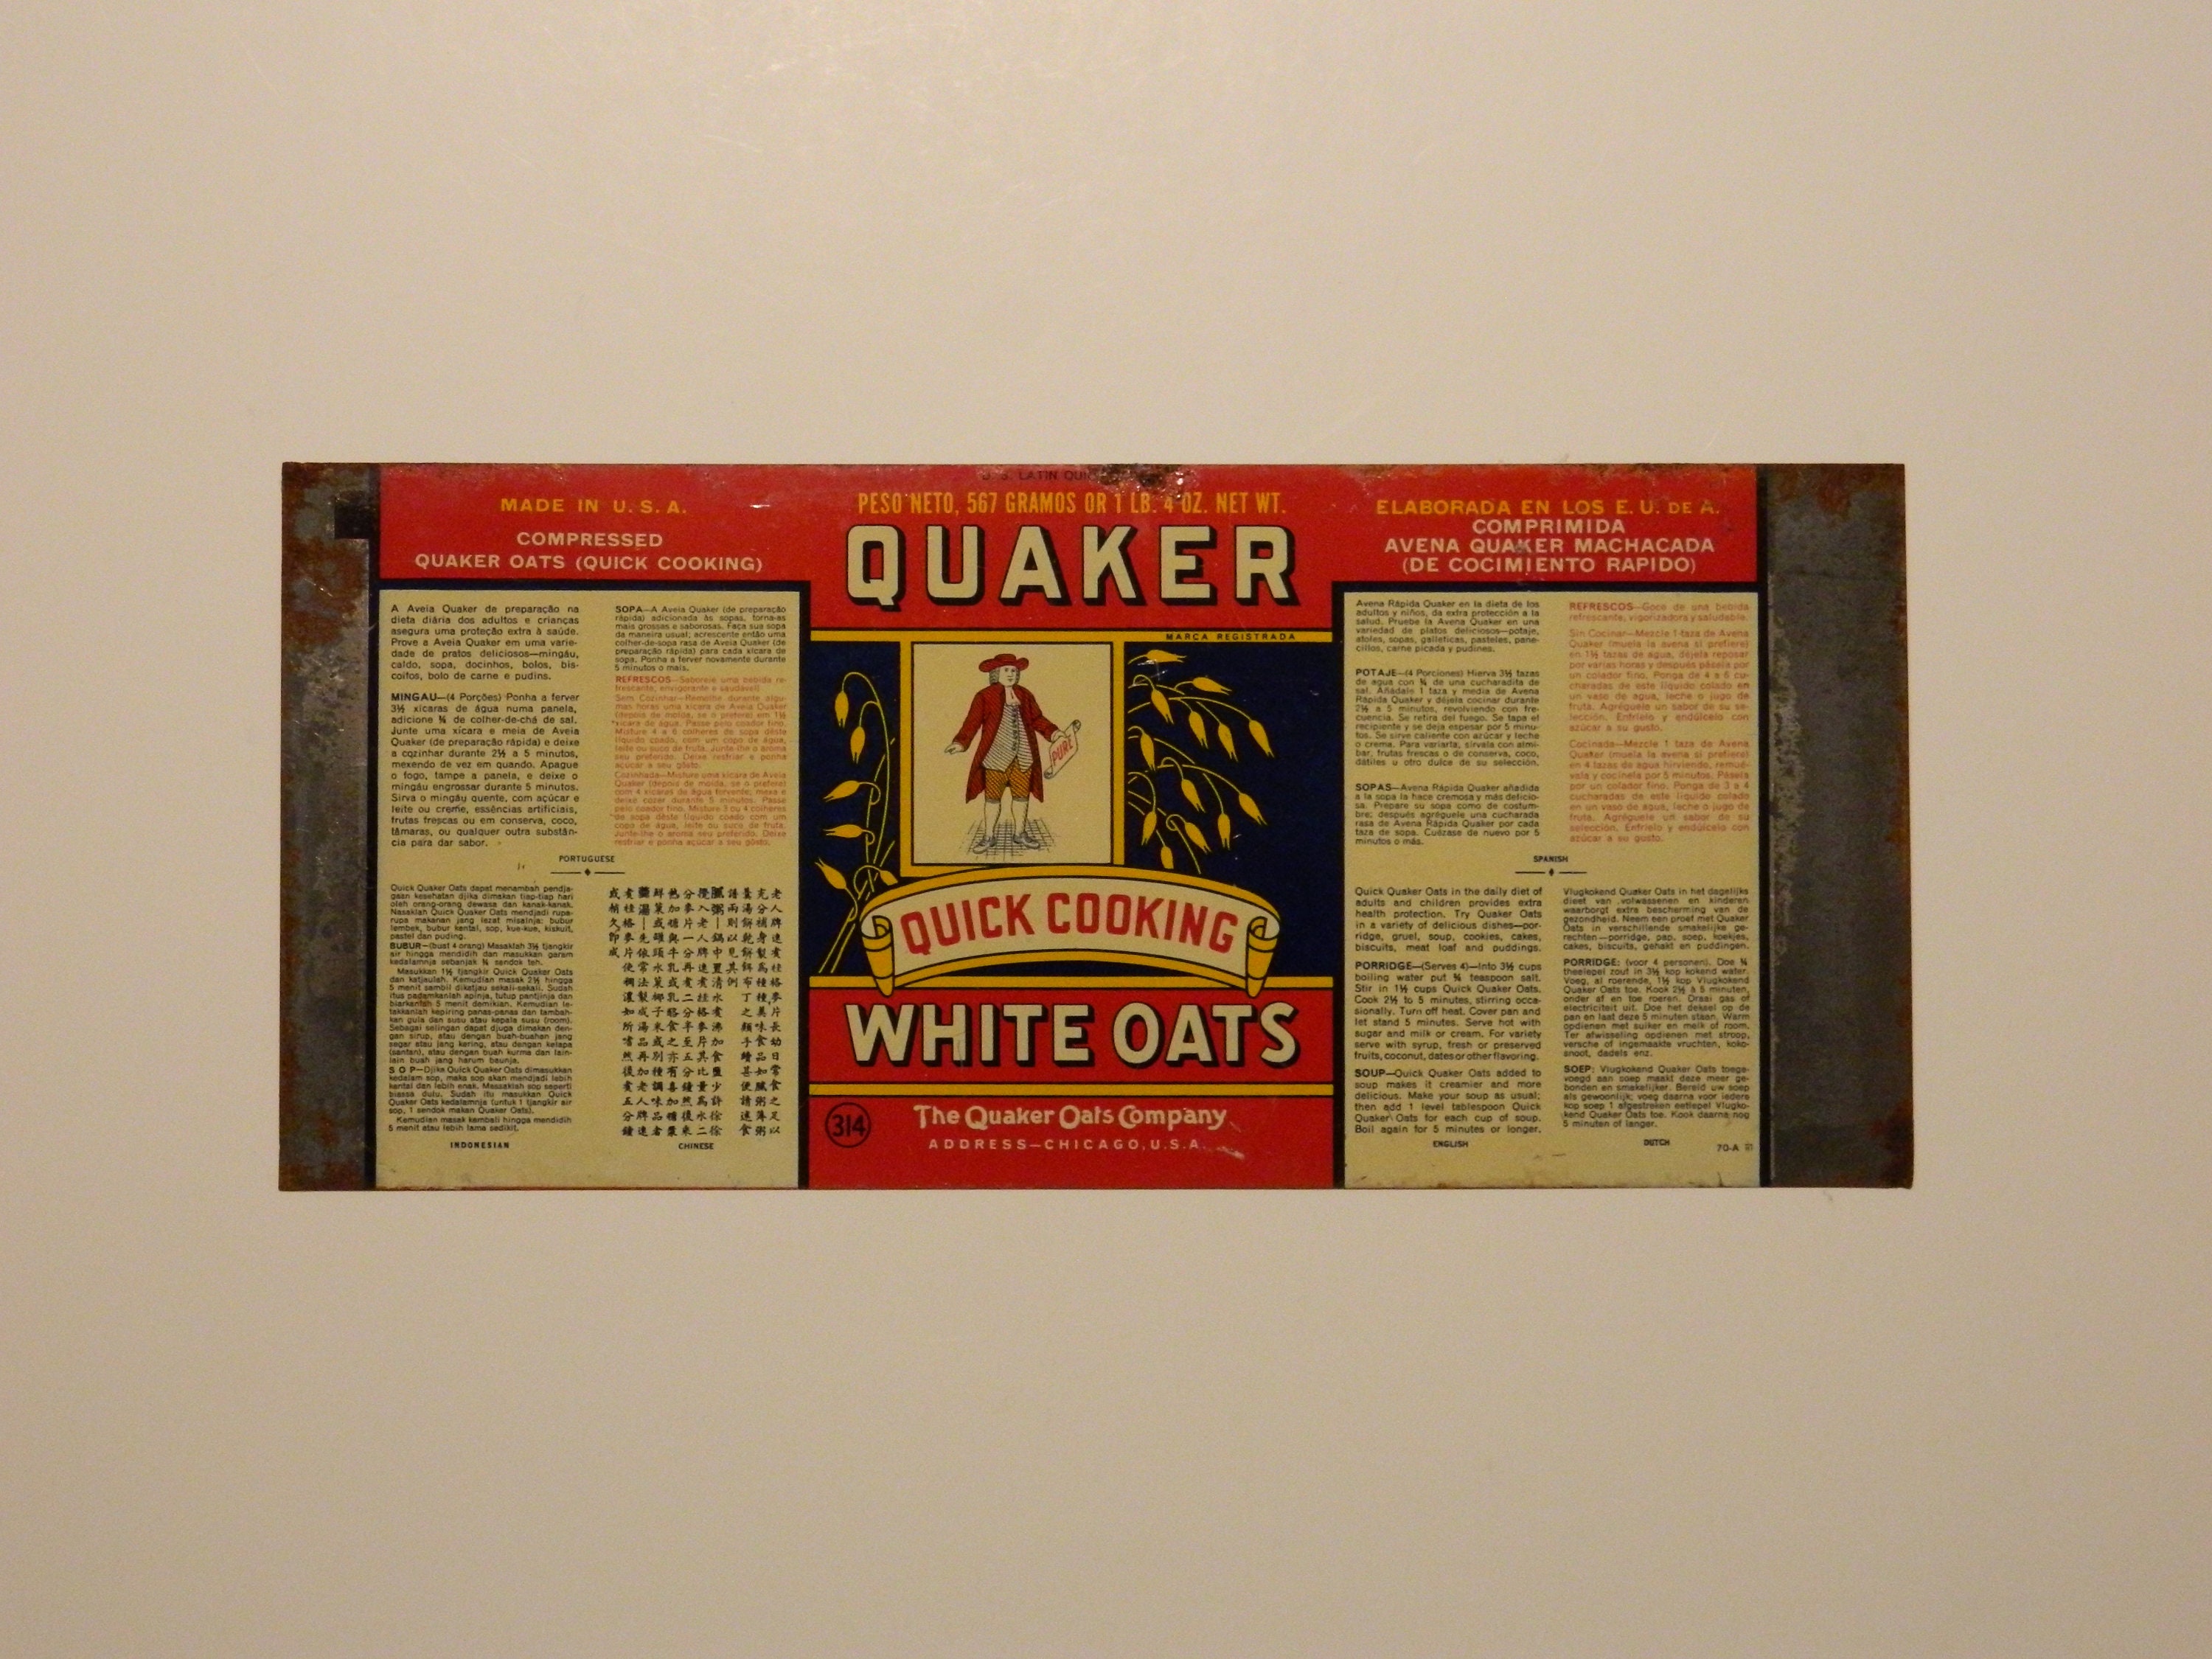 PRICE LOWERED RARE ORIGINAL 1896 Quaker Oats Container Like Cracker Barrel  Decor